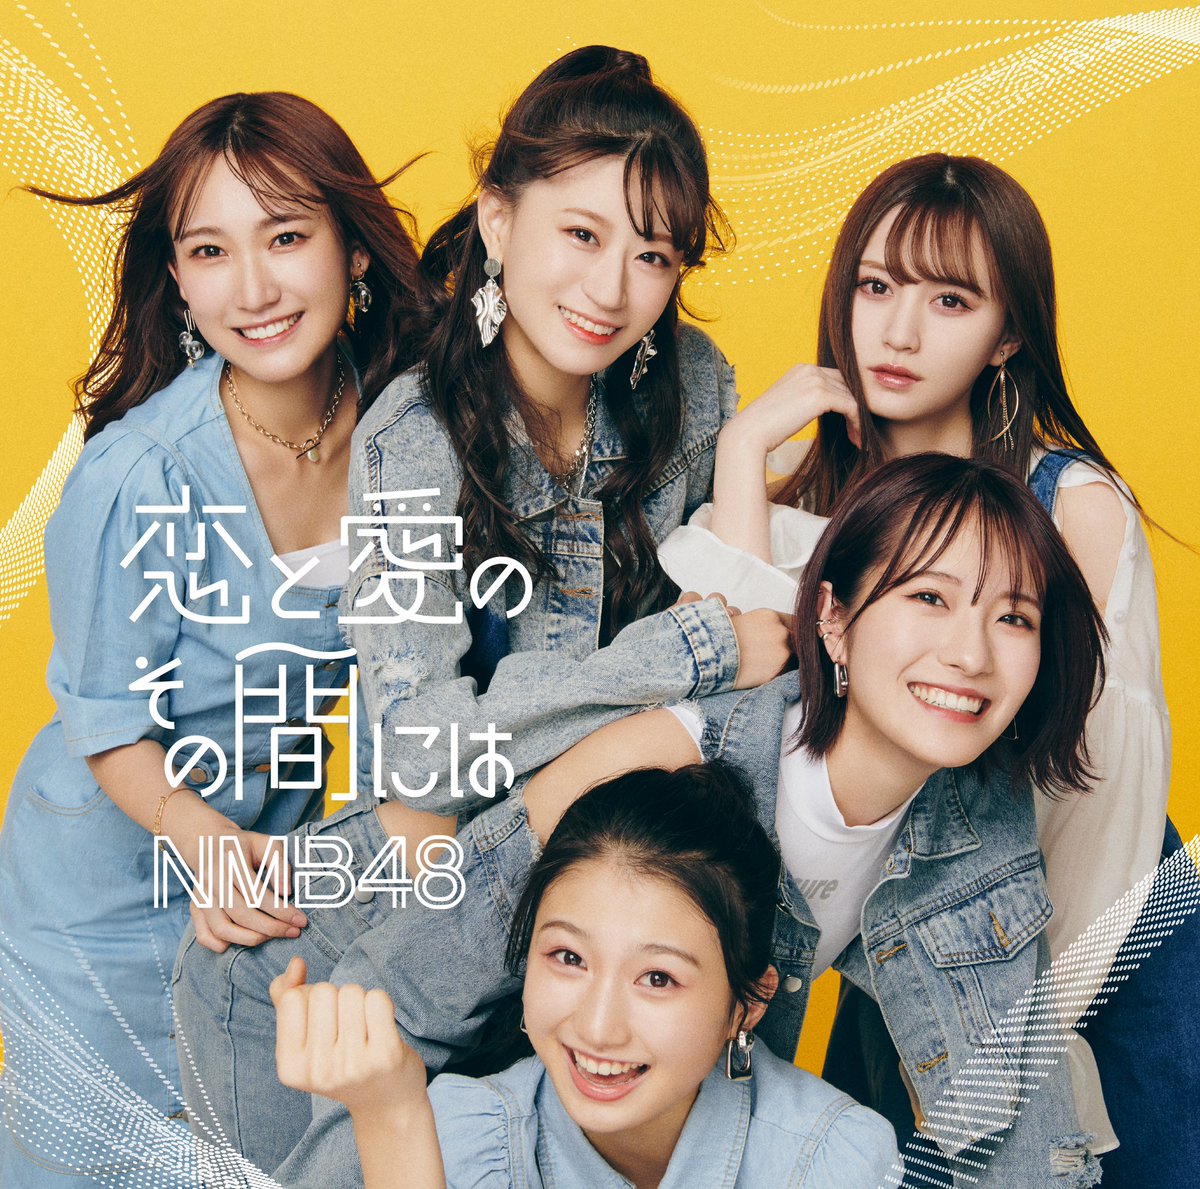 『梅山恋和(NMB48) - 秘密日記』収録の『恋と愛のその間には』ジャケット